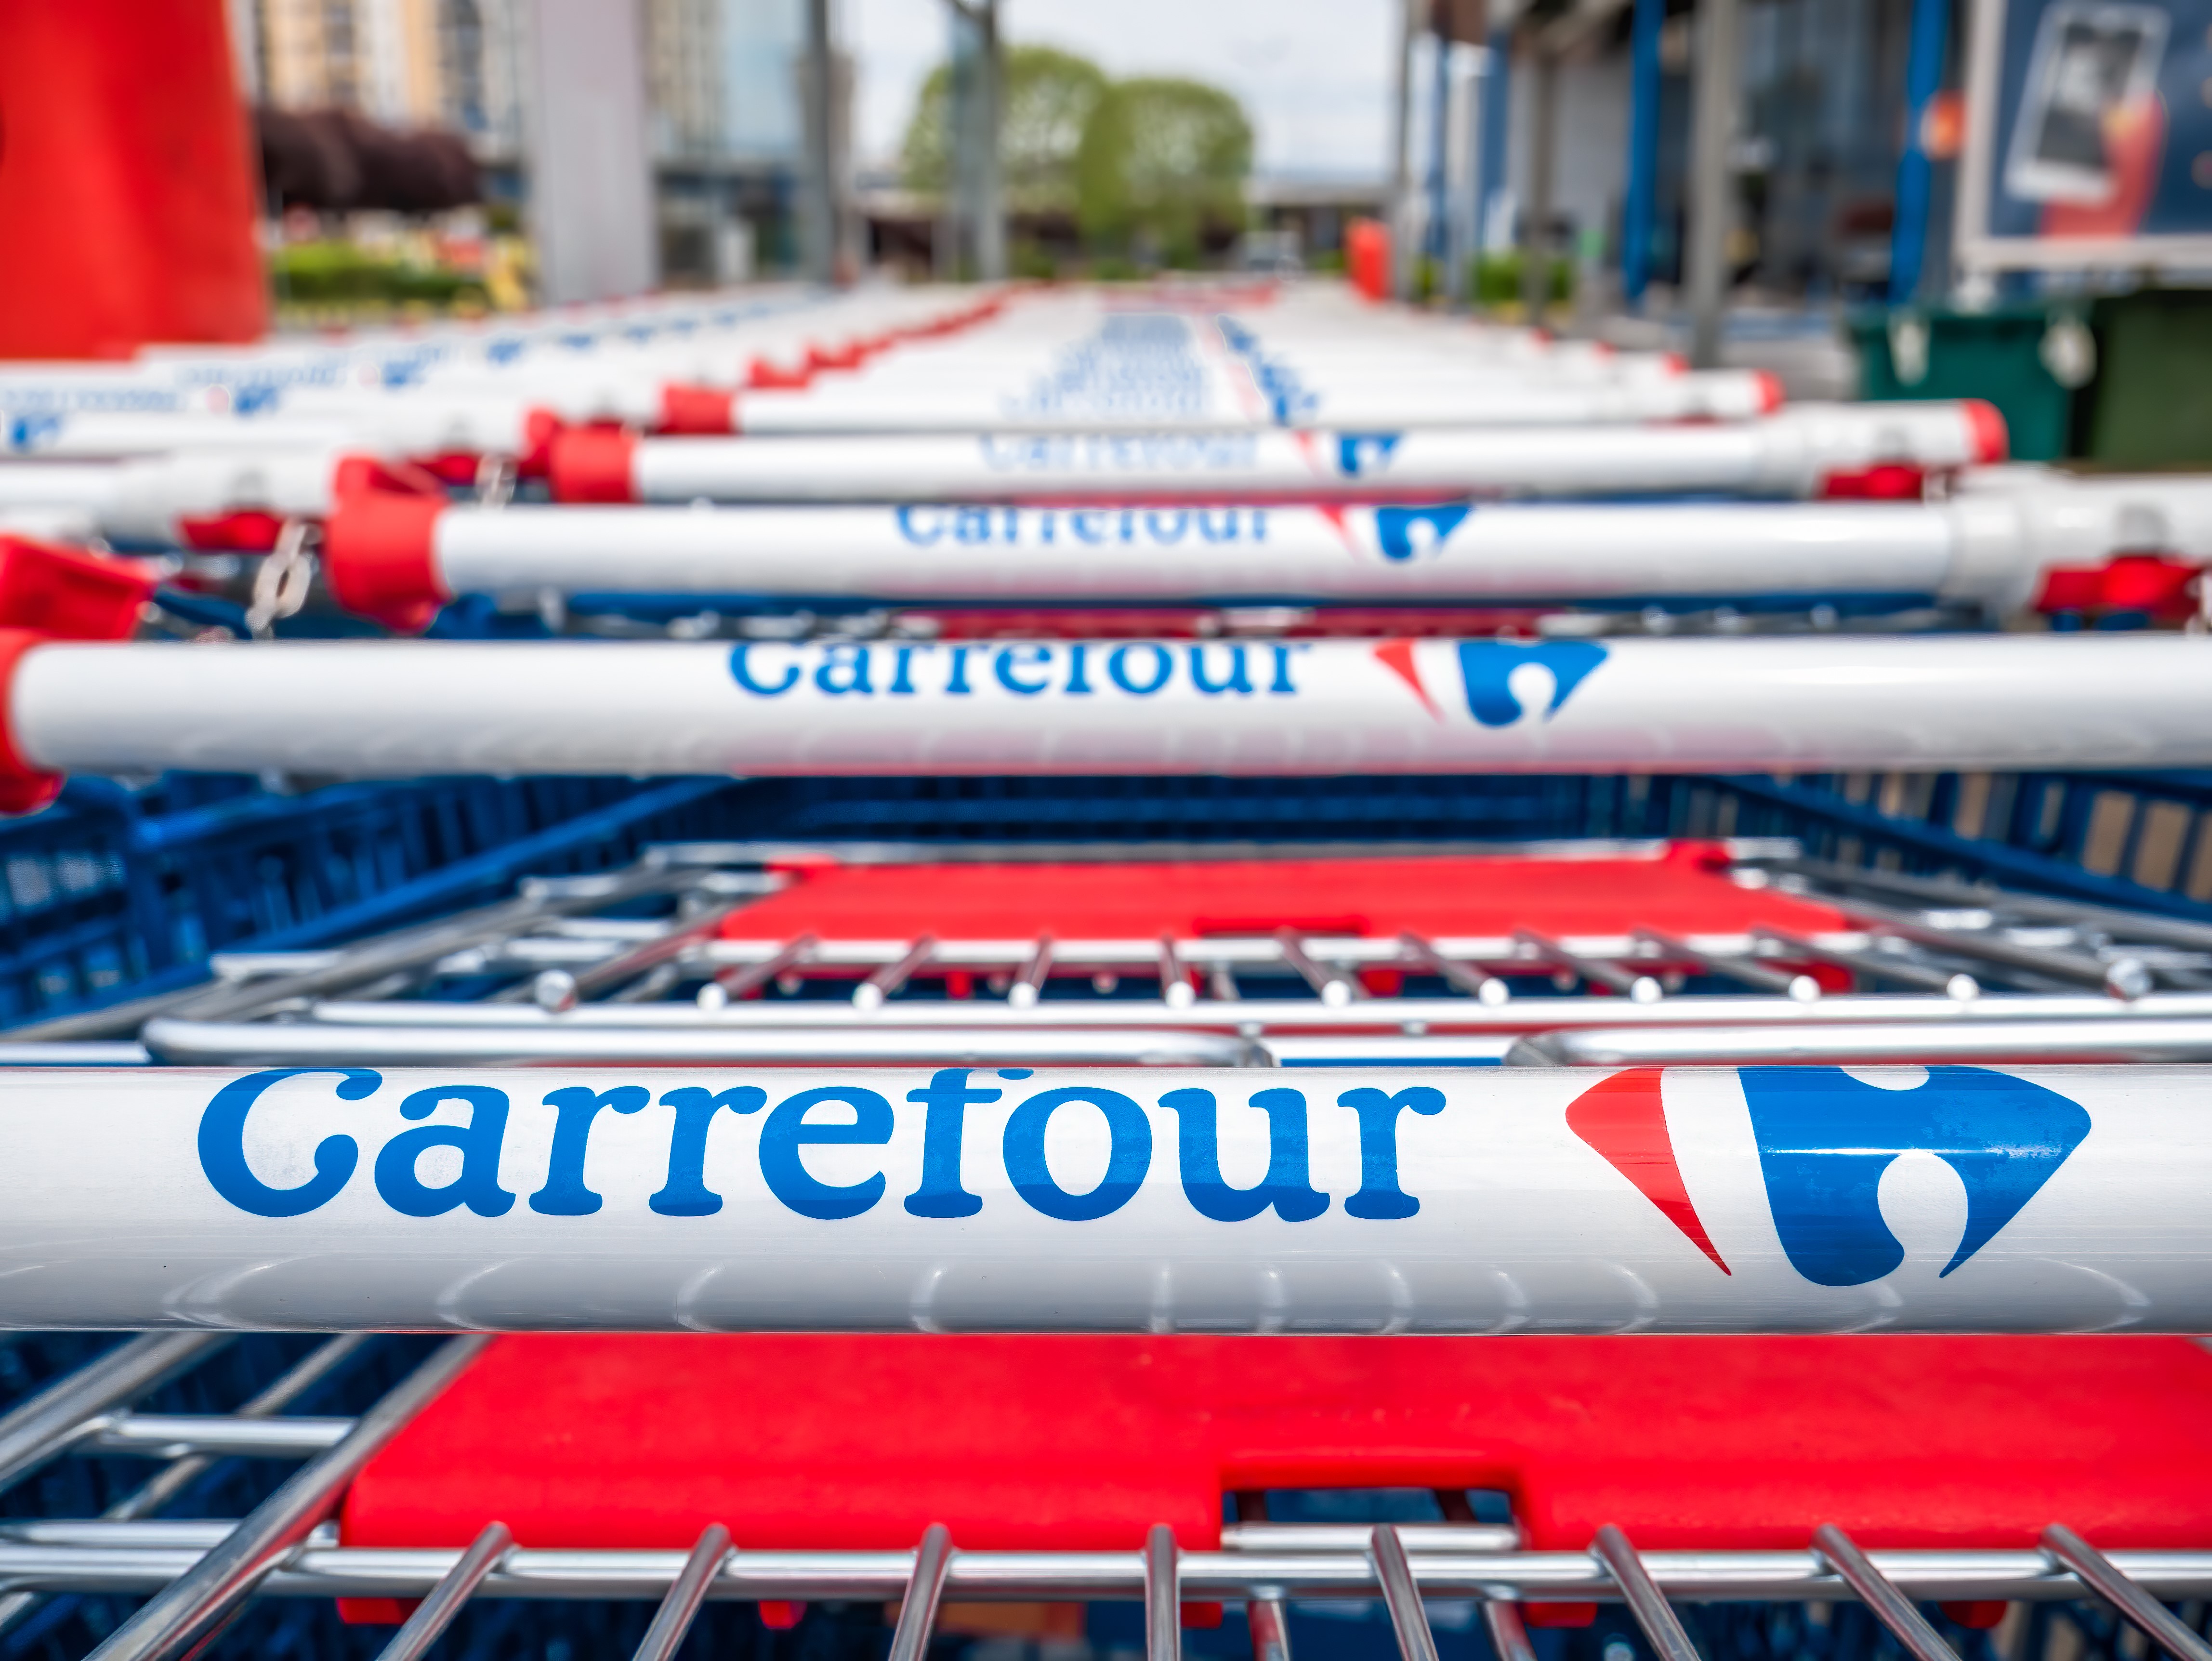     Les magasins Carrefour de Martinique ne sont pas concernés par le retrait des produits Pepsico

